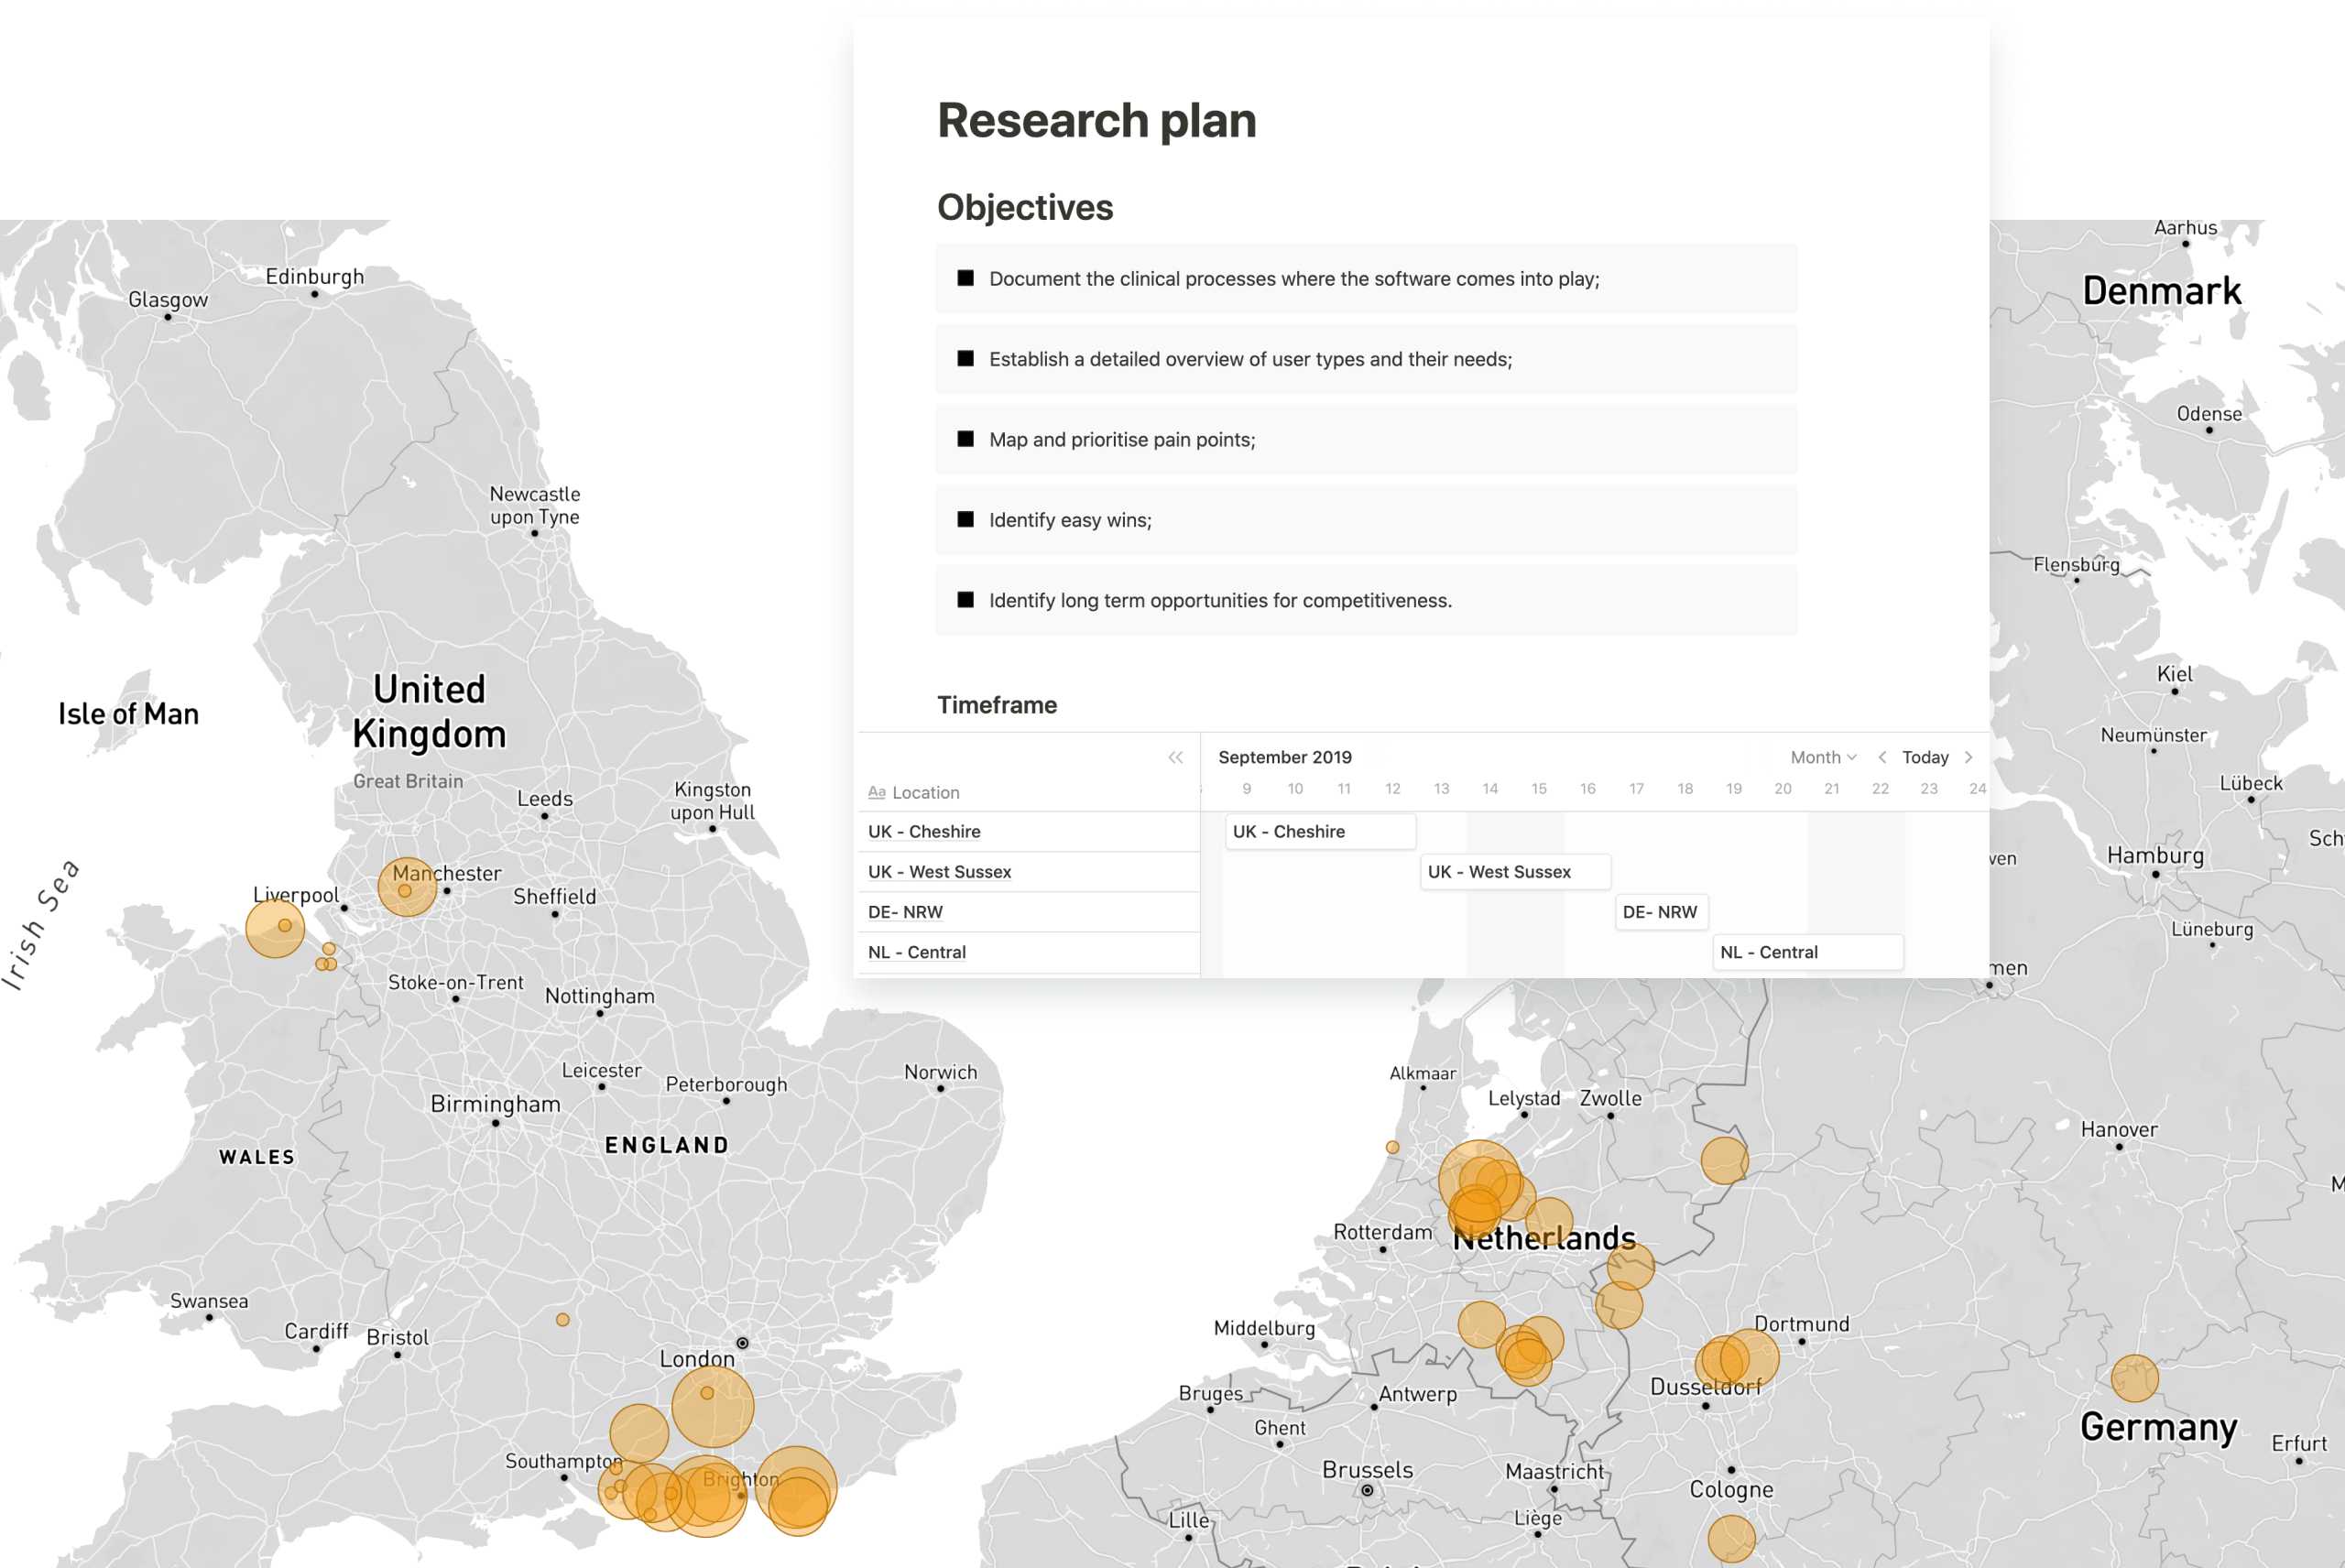 Kaart van het VK en Duitsland met locaties van gebruikersonderzoek gemarkeerd